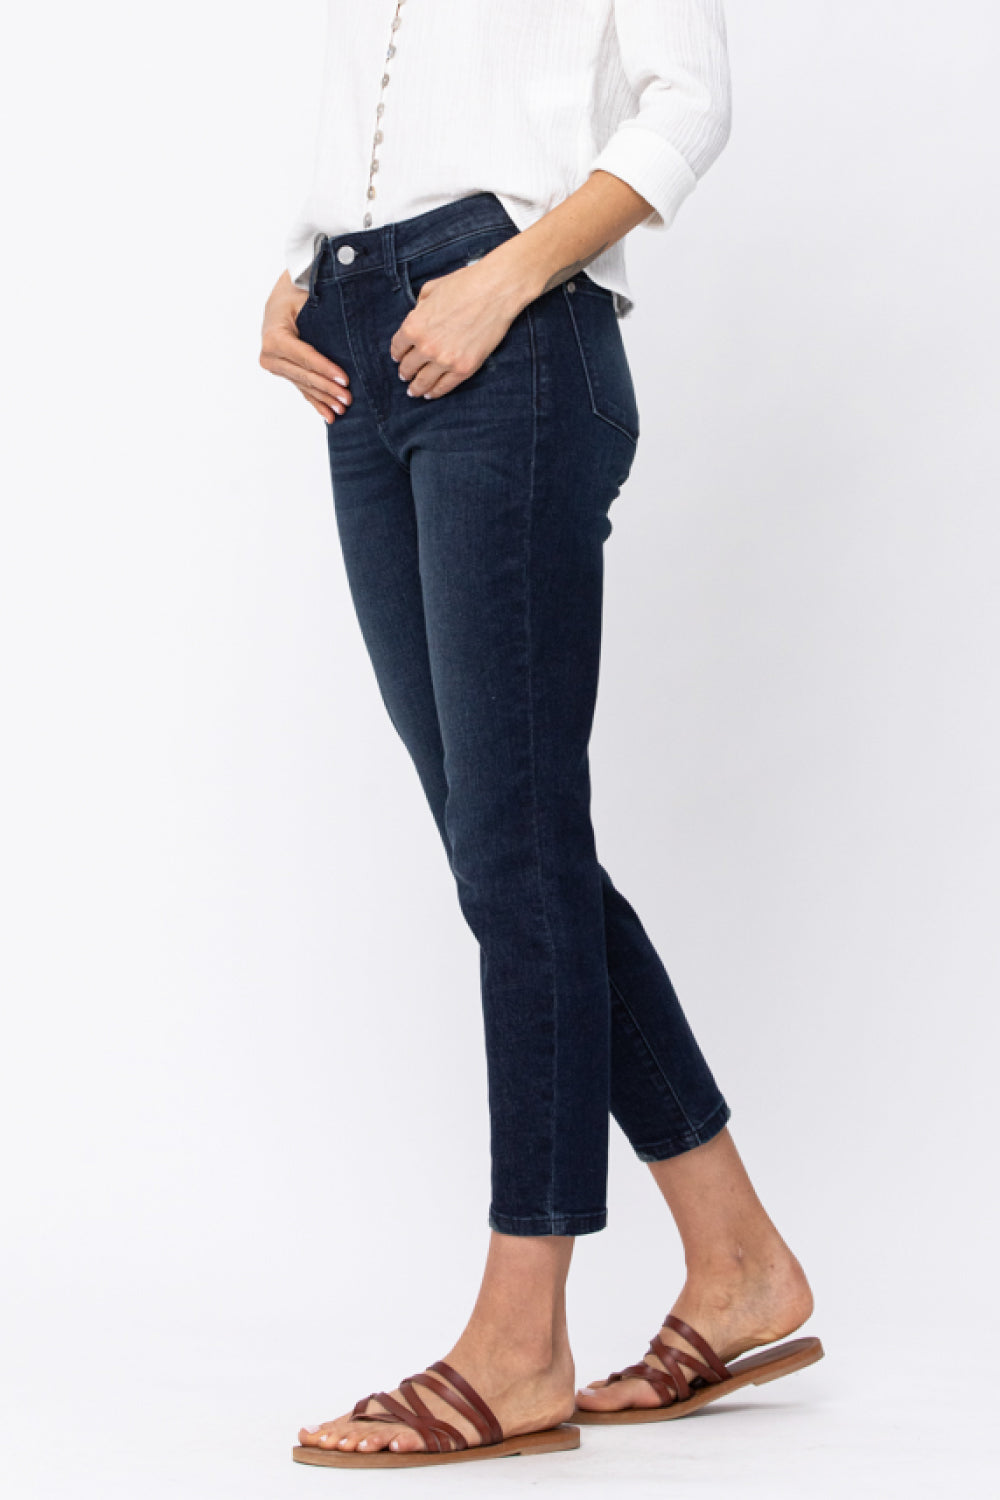 Judy Blue Going Places Cool Denim Boyfriend Jeans Jeans JT's Designer Fashion